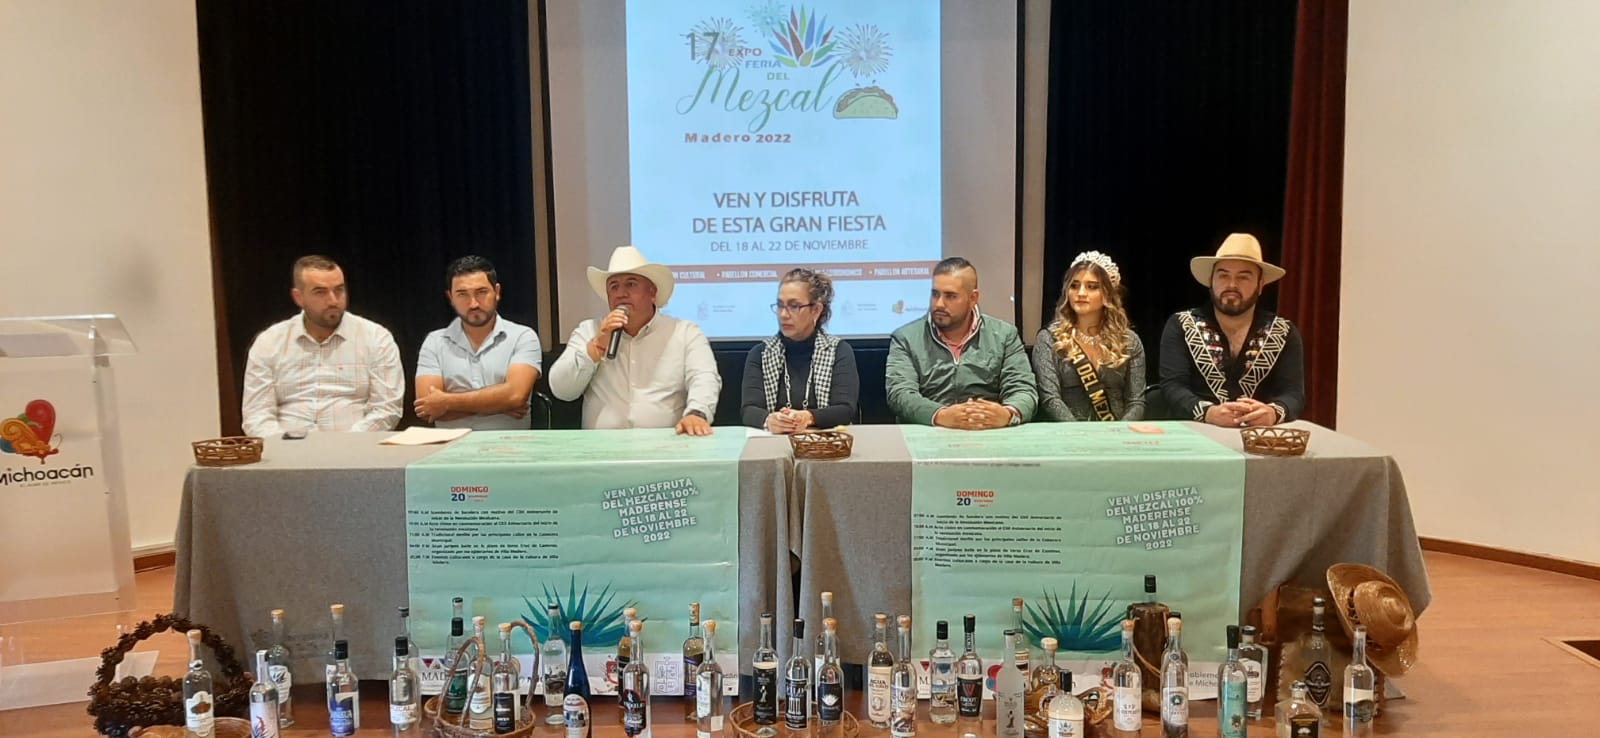 Villa Madero invita a disfrutar de la XVII Expo Feria del Mezcal